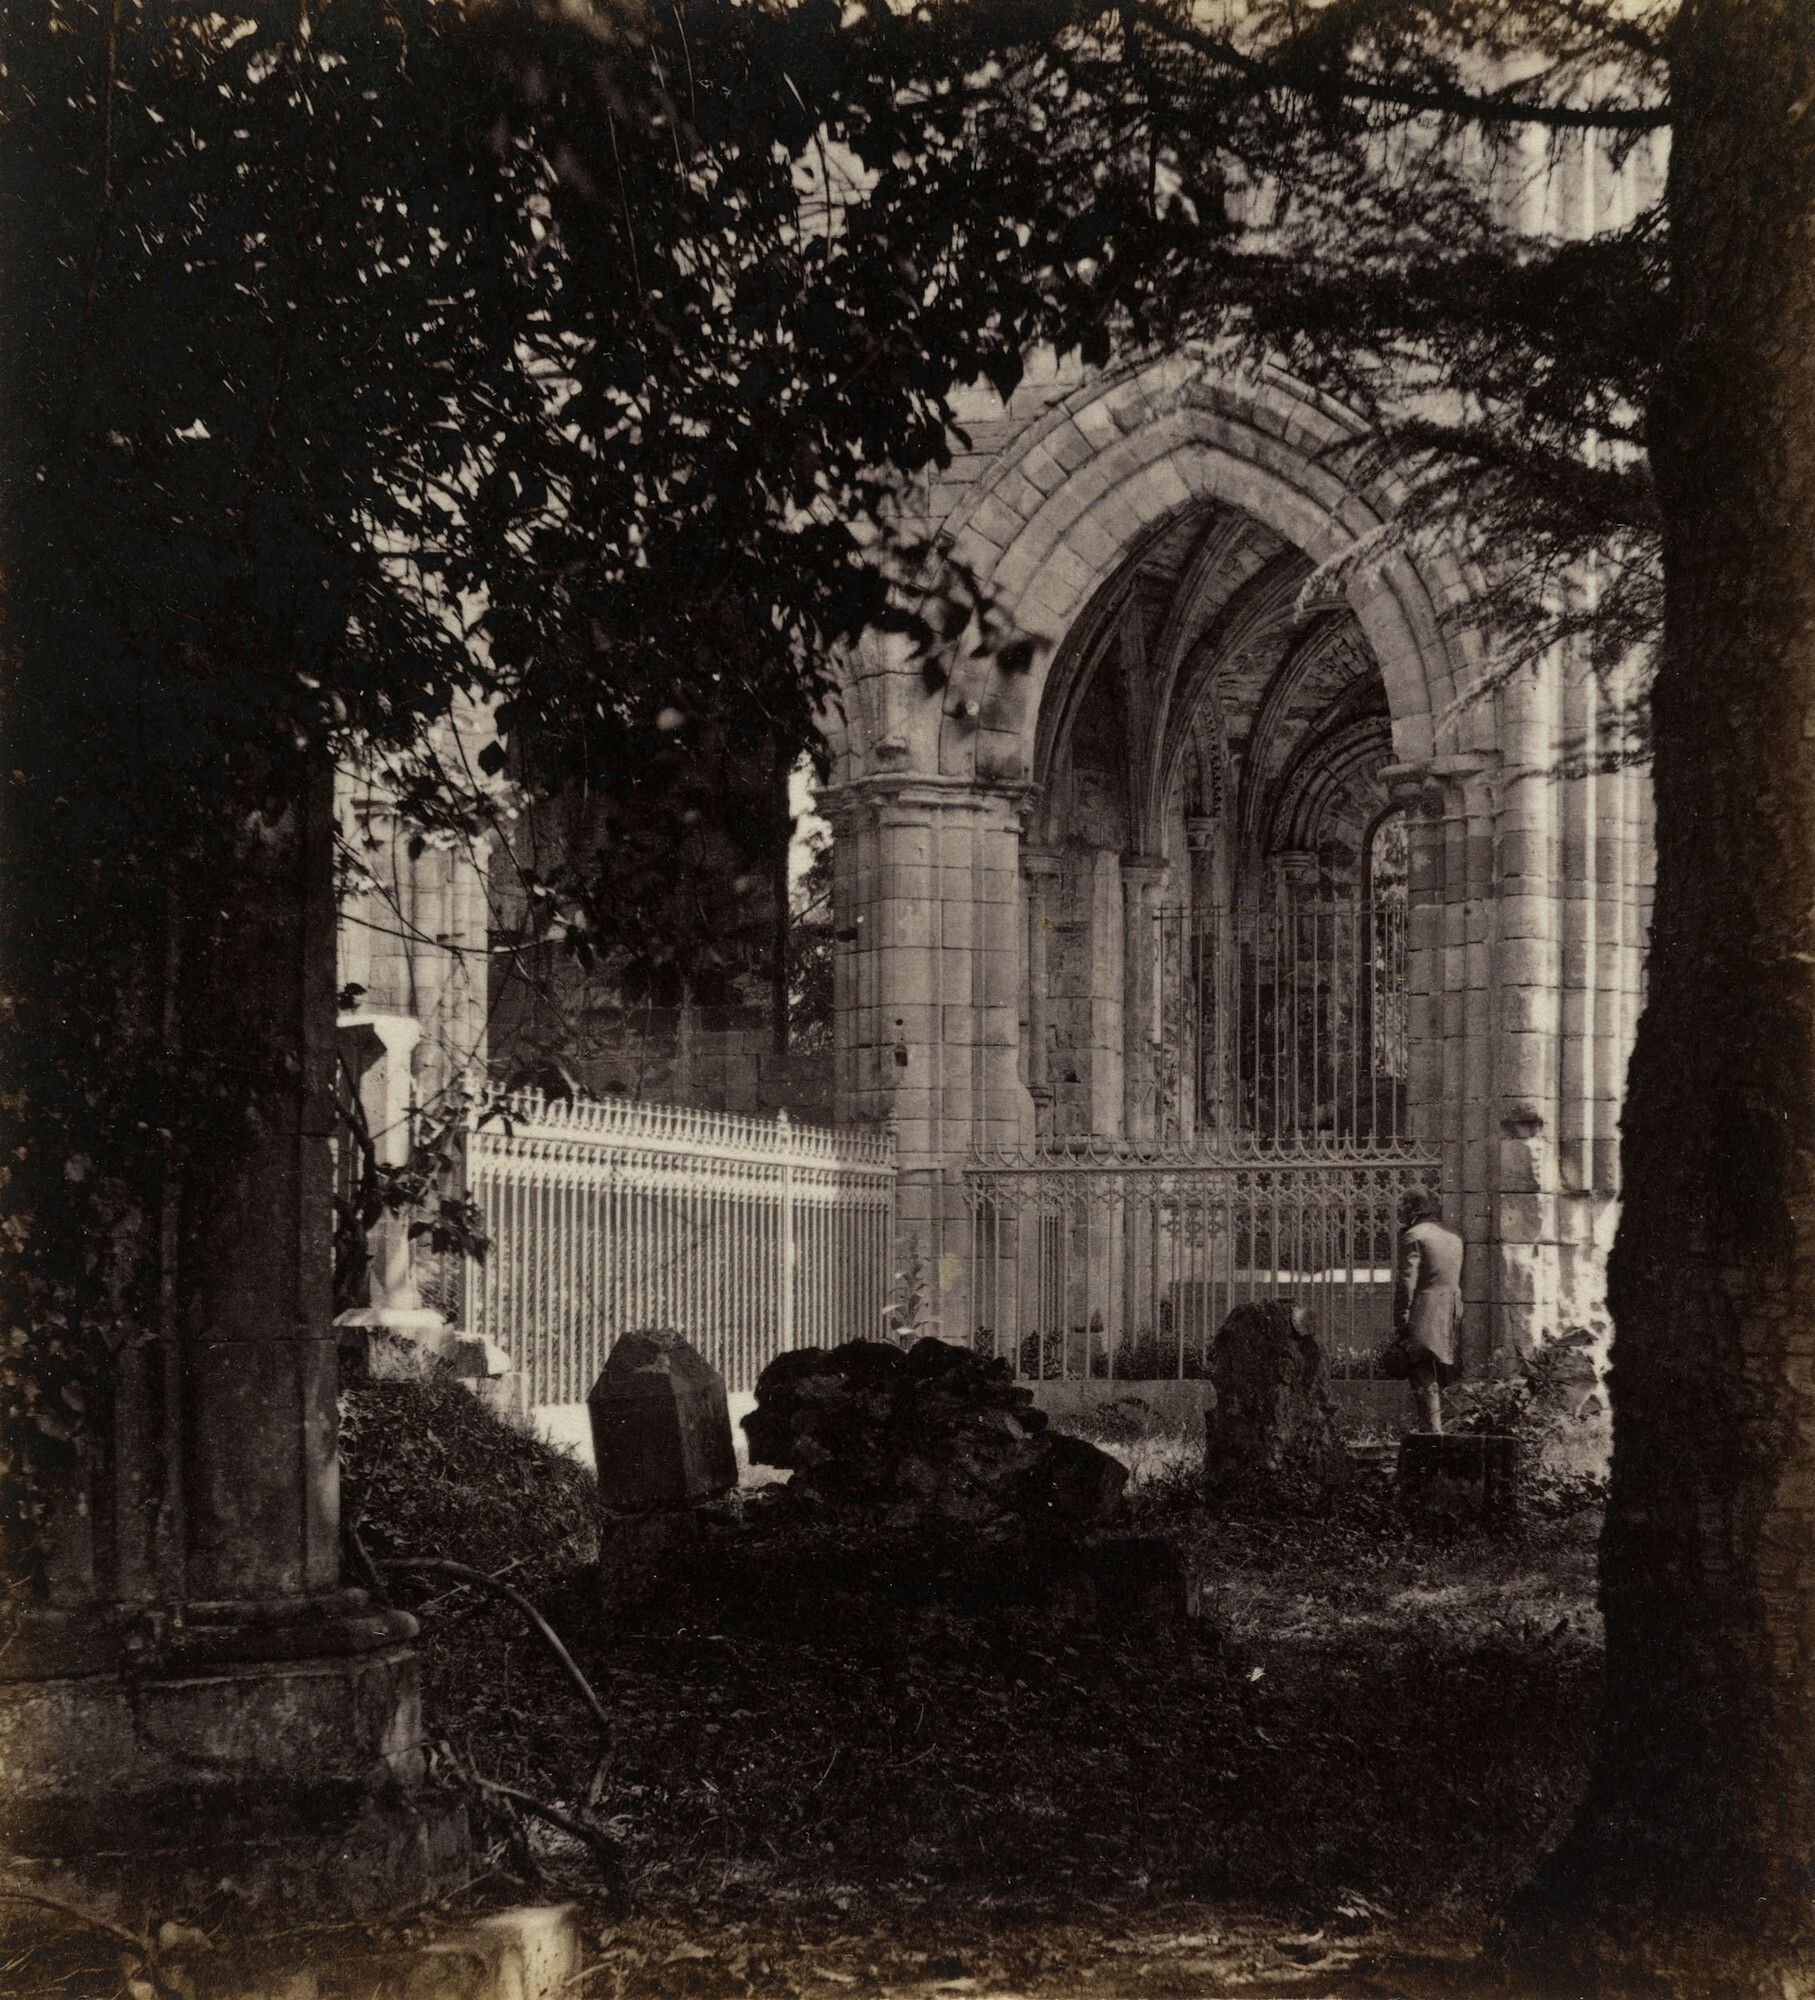 Драйбургское аббатство близ границы с Шотландией (место захоронения Вальтера Скотта), 1859. Фотограф Джордж Вашингтон Уилсон